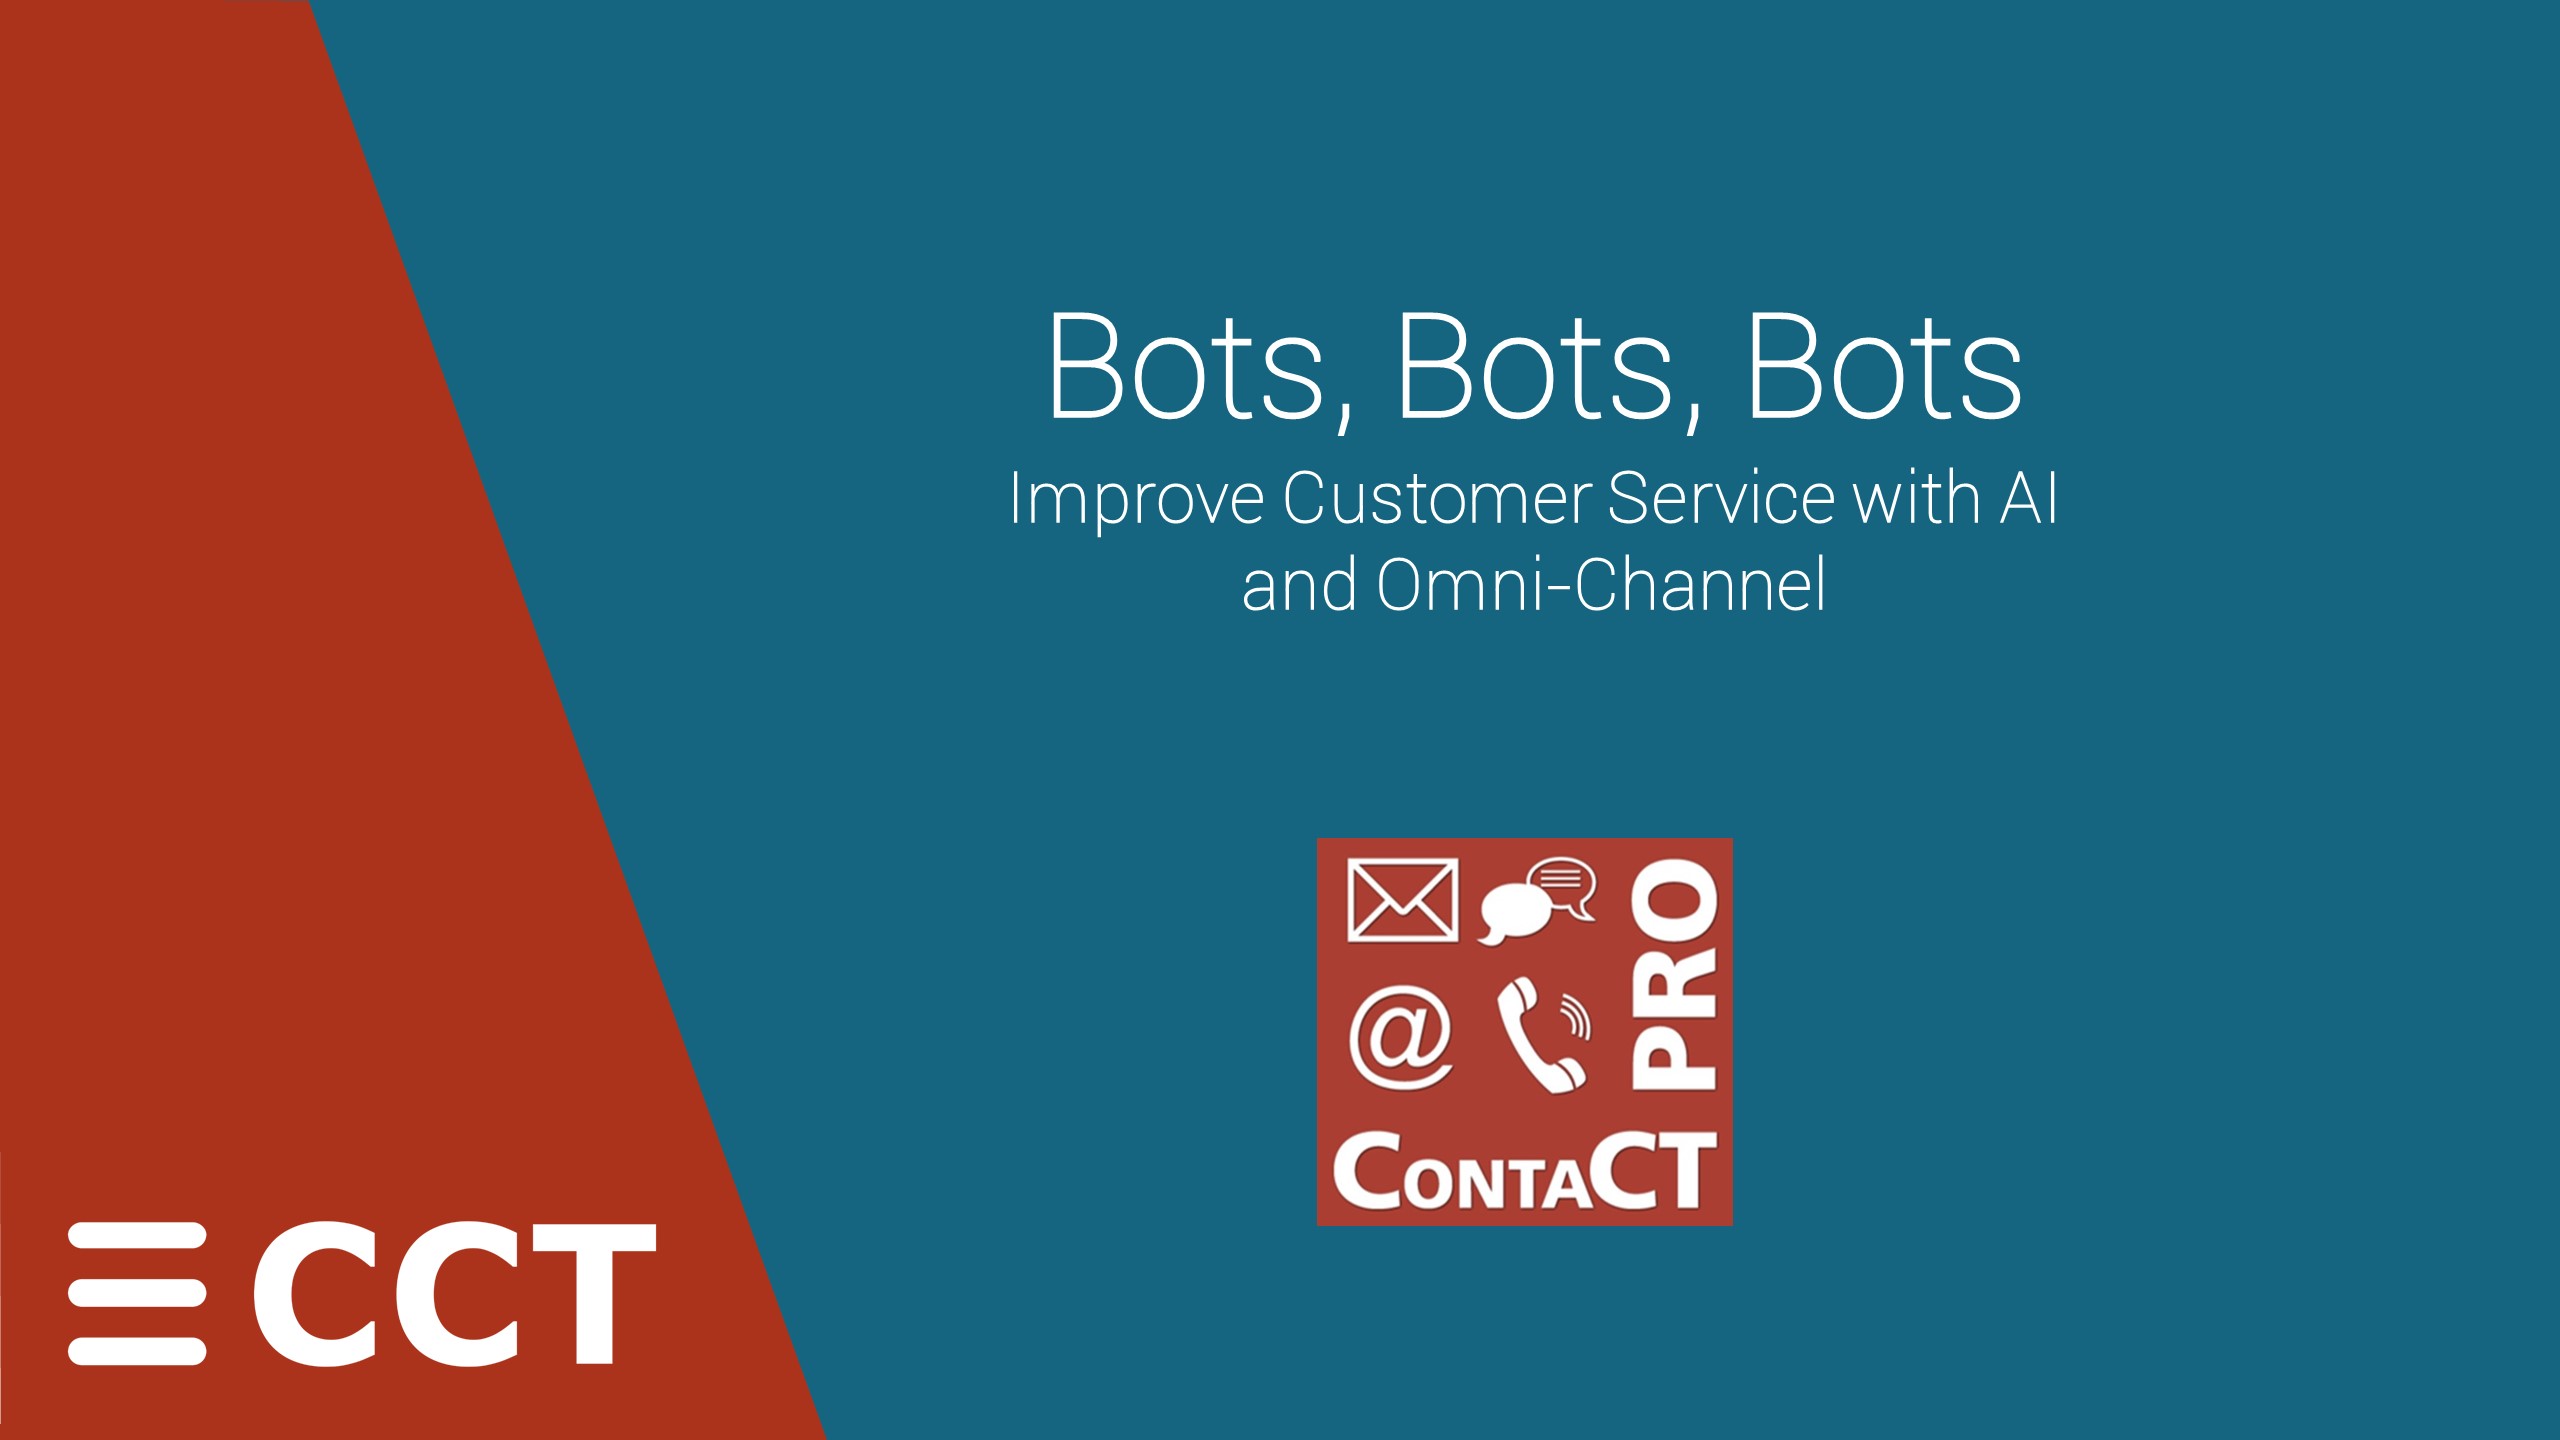 Bots Bots Bots CCT Webinar 20th May 2021